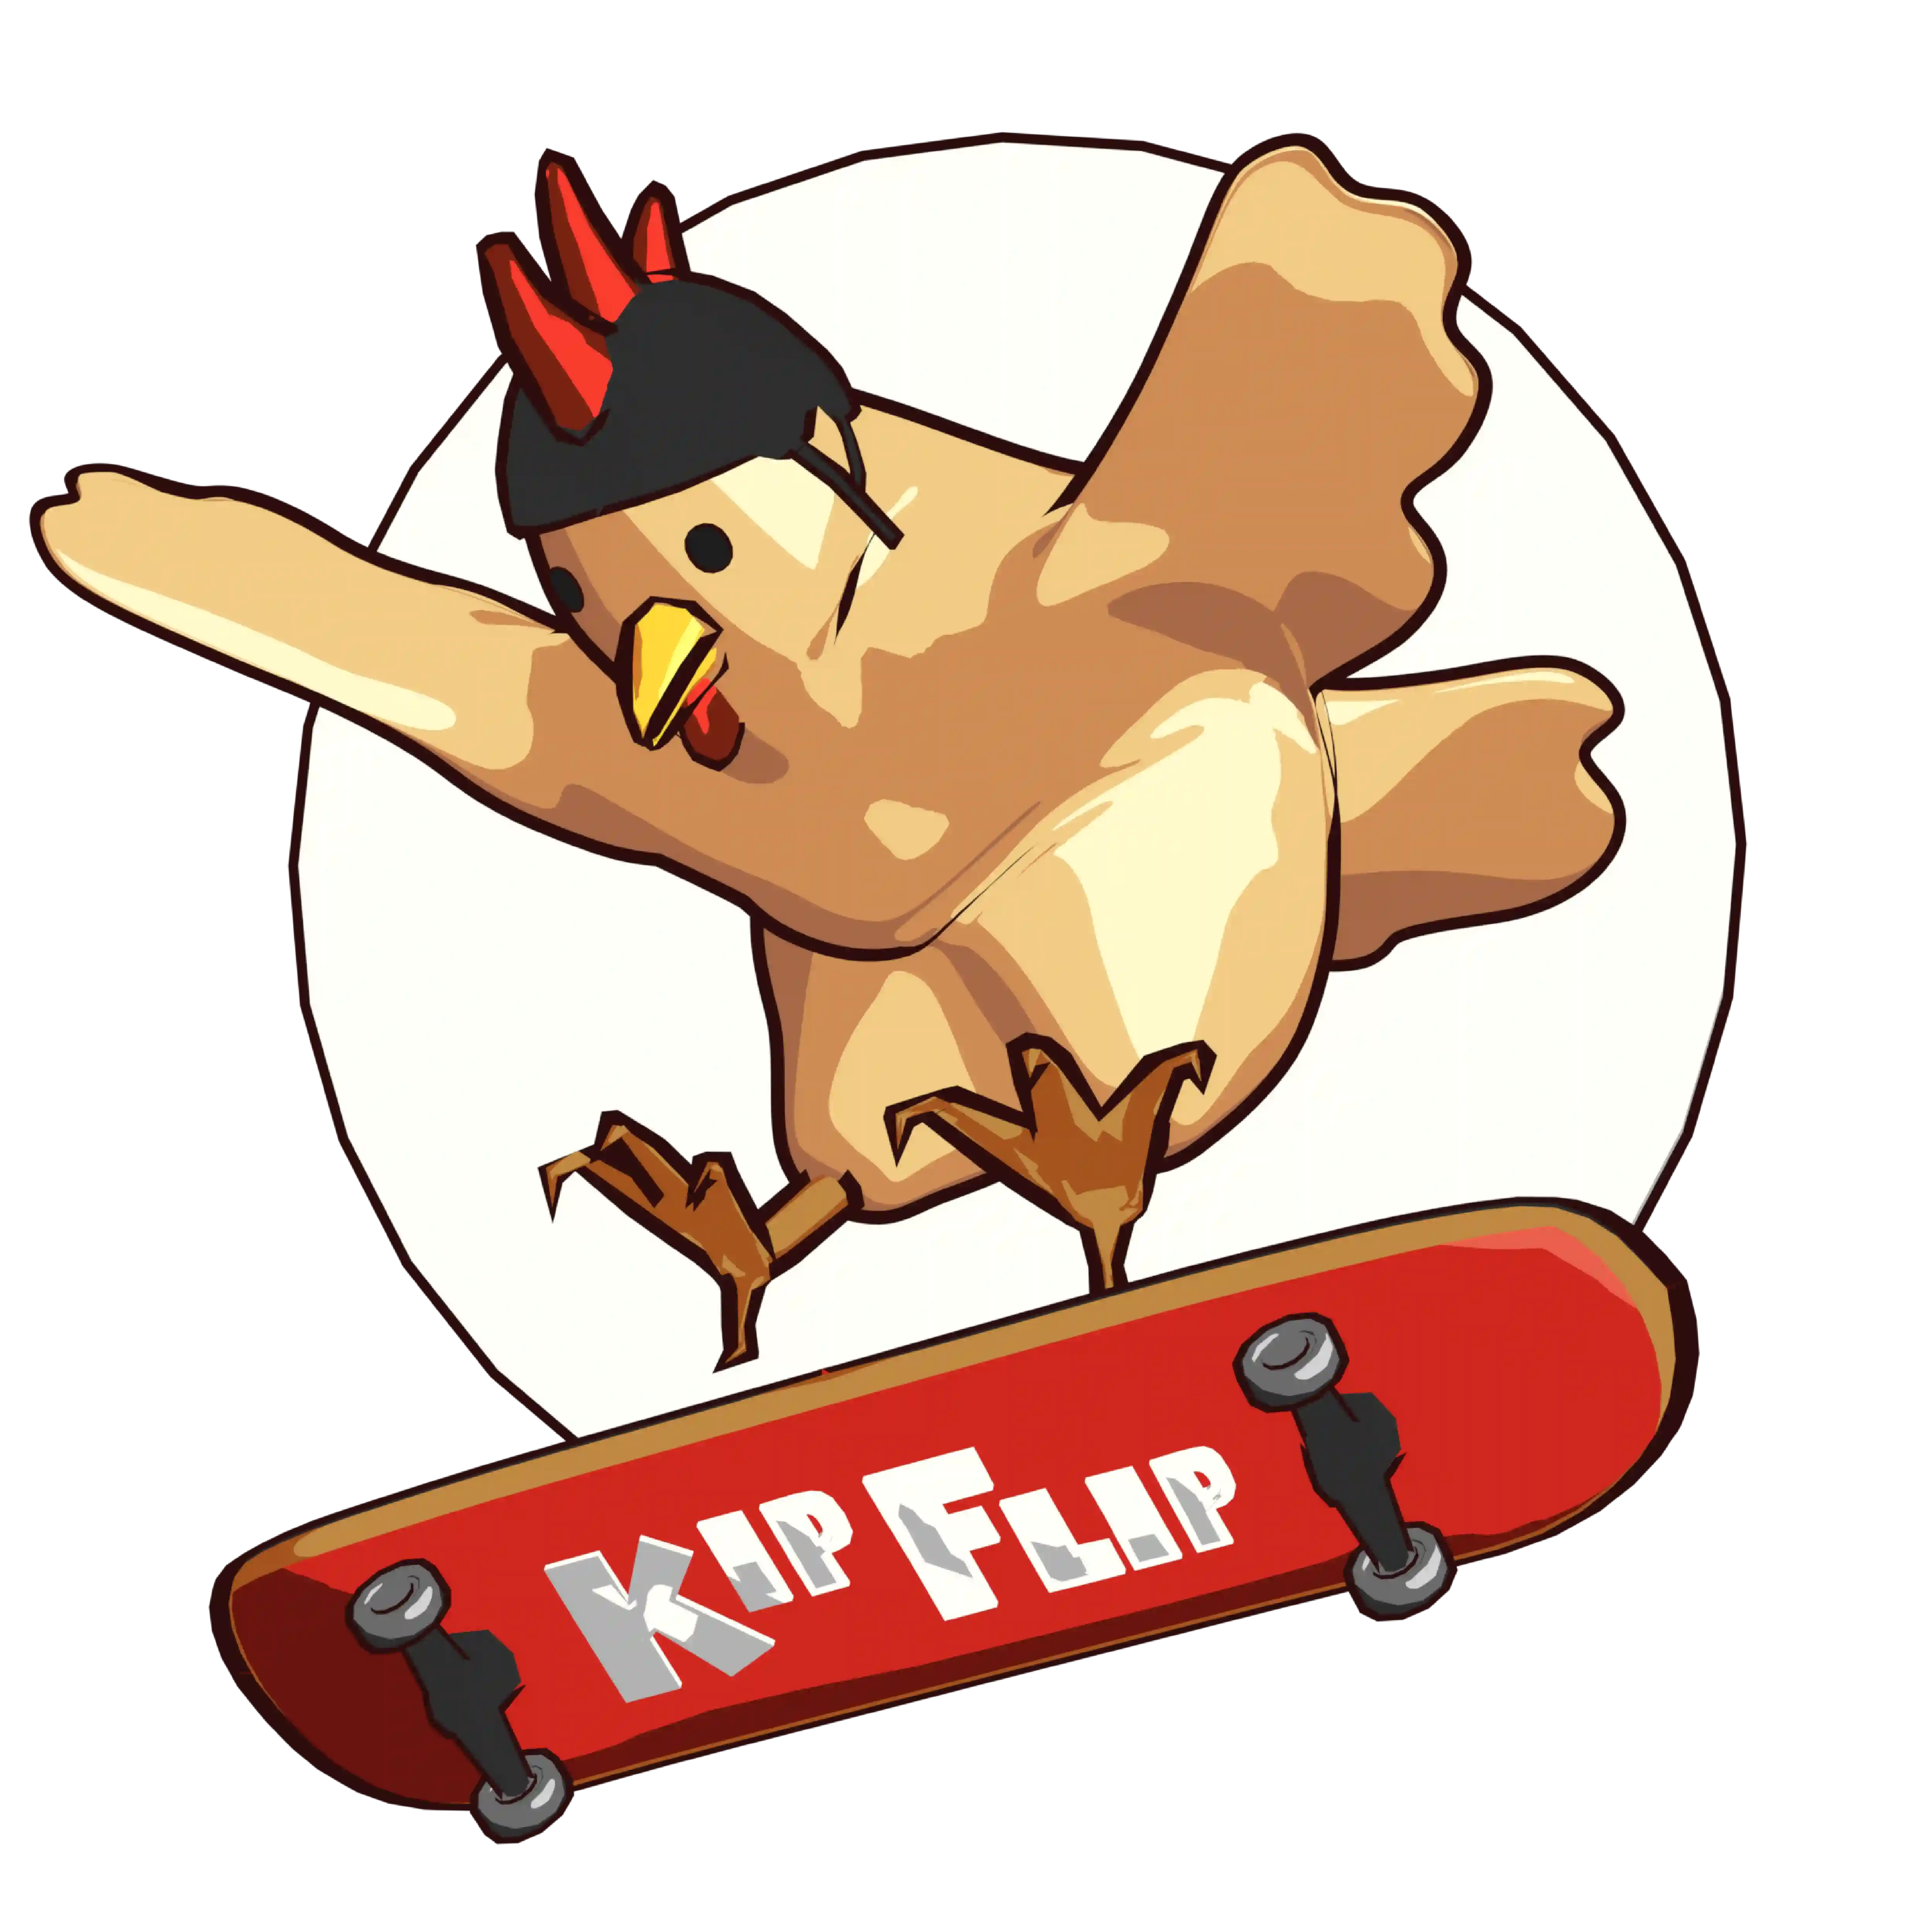 The logo of KipFlip